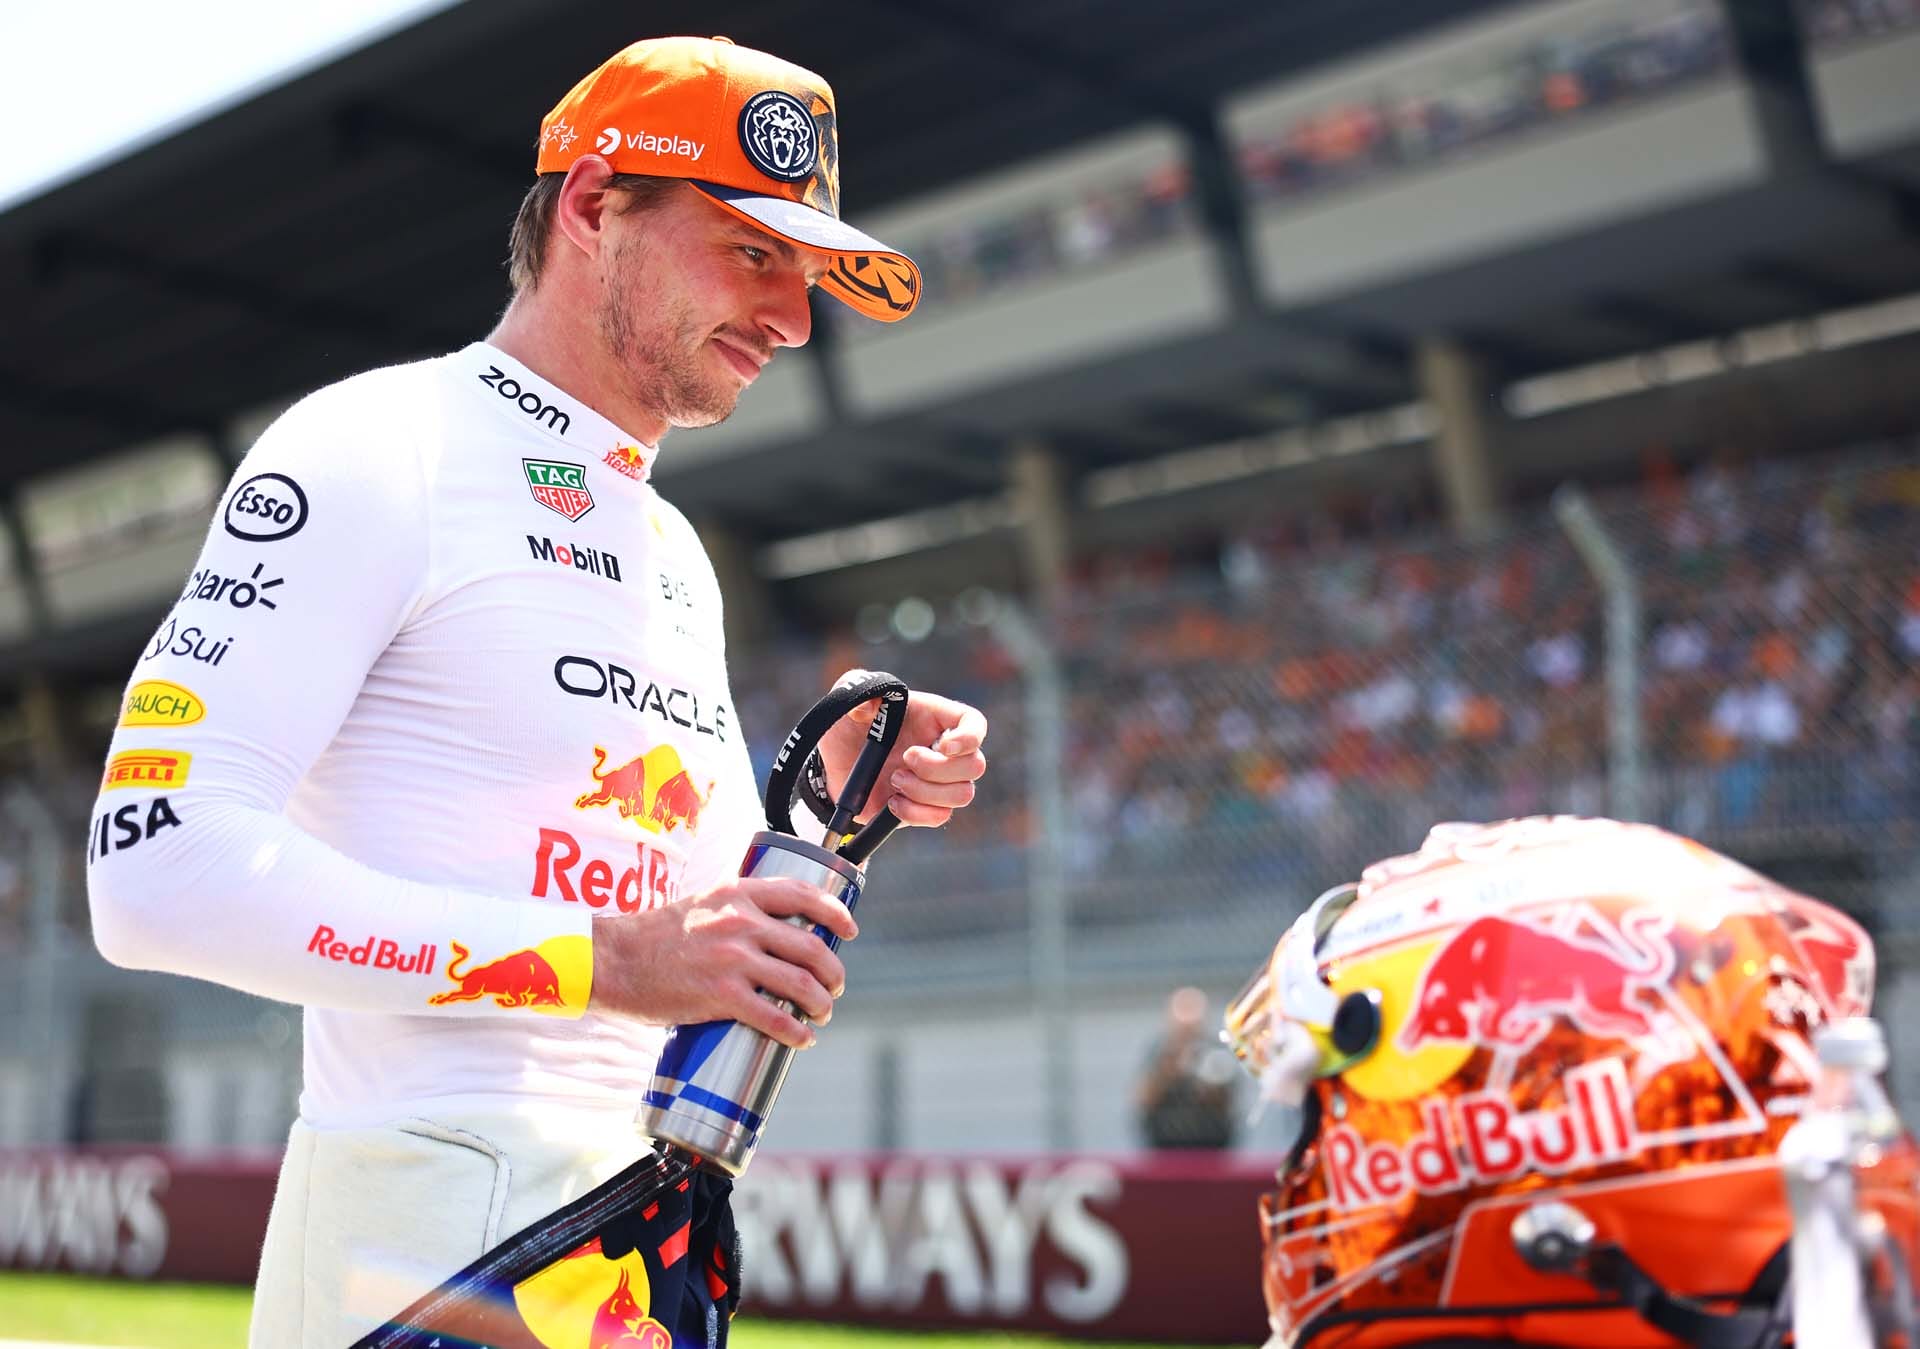 Az F1 világát meglepte Verstappen hatalmas pole-ért vívott győzelme